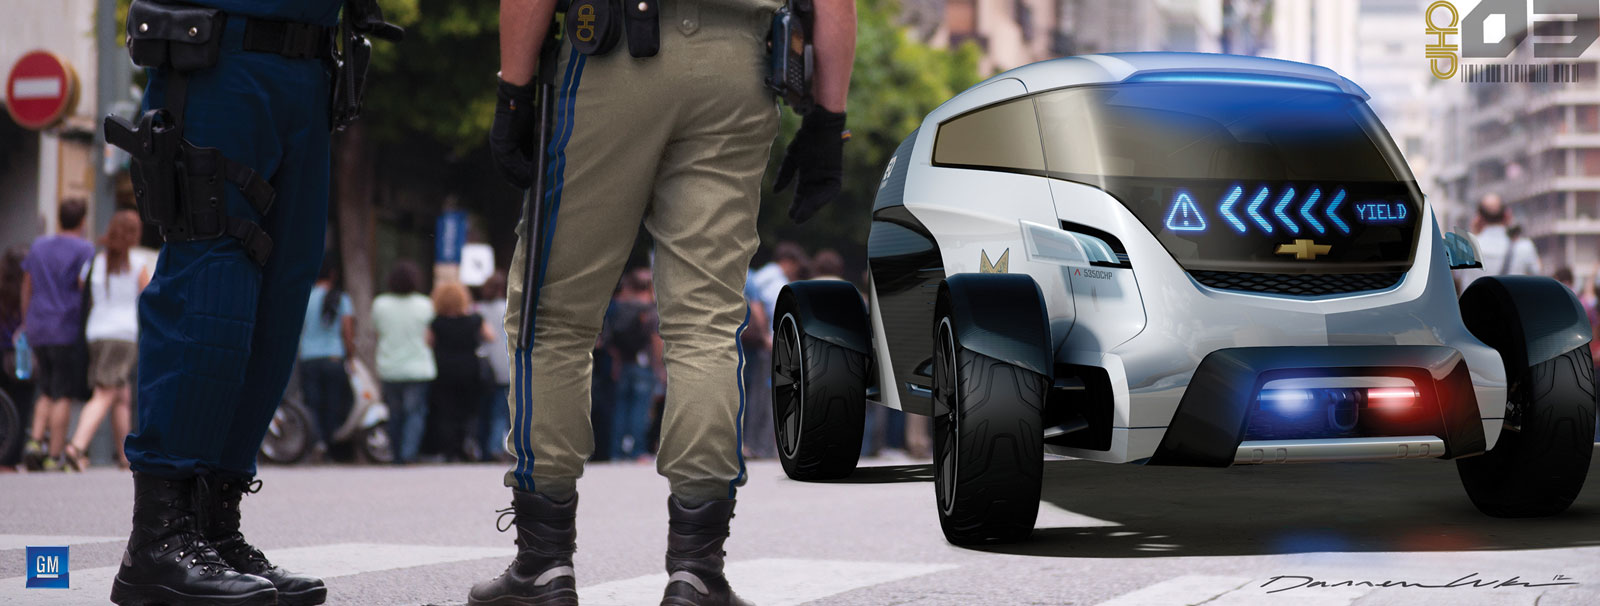 LA Design Challenge (2012): General Motors Volt Squad - Engage Concept